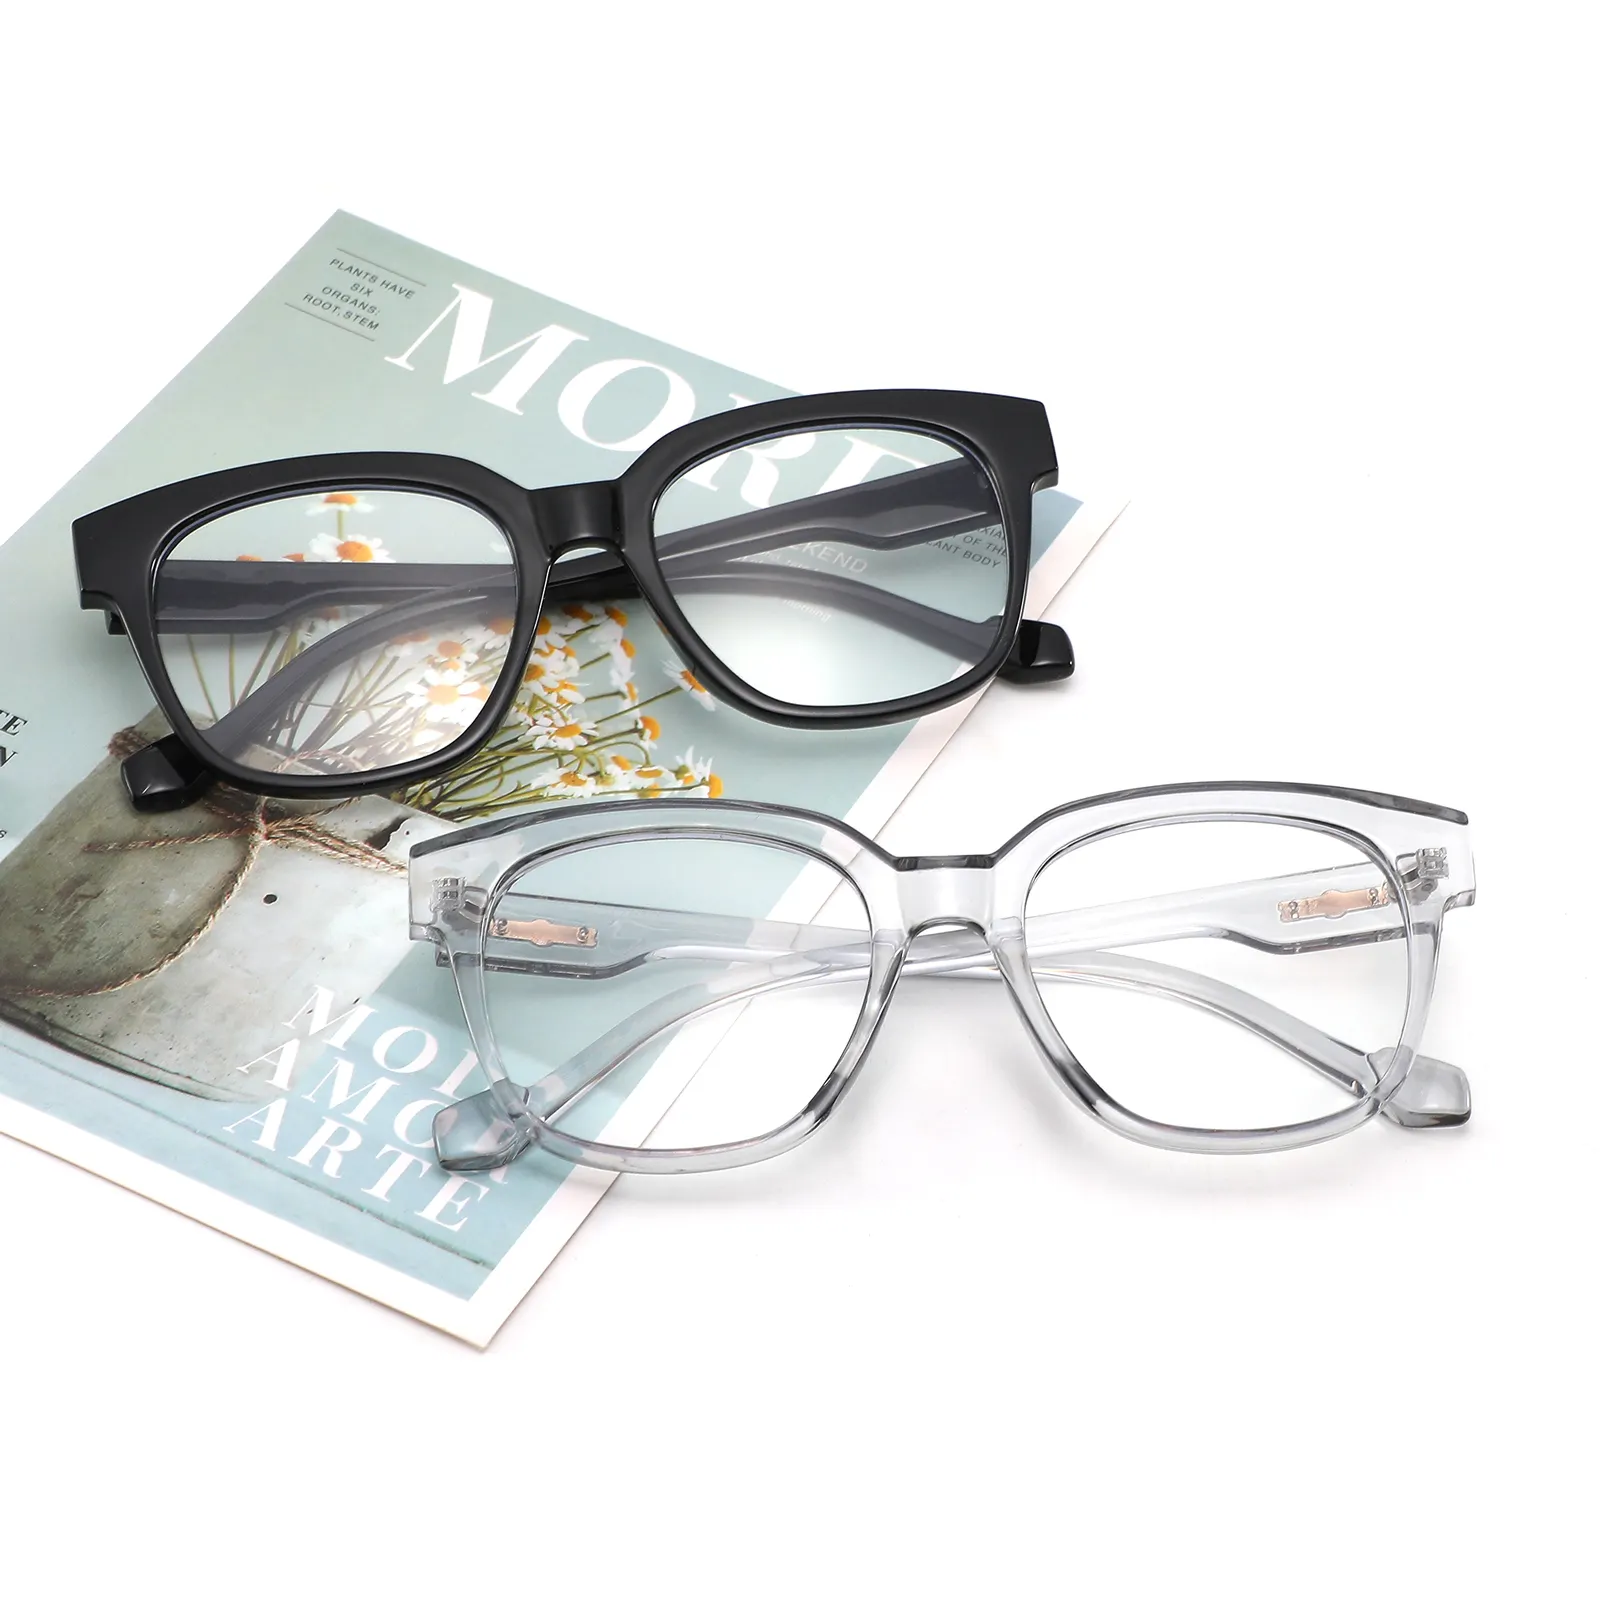 Yeni ucuz gözlük şık kare gözlük Pc optik gözlük çerçeveleri optik gözlük